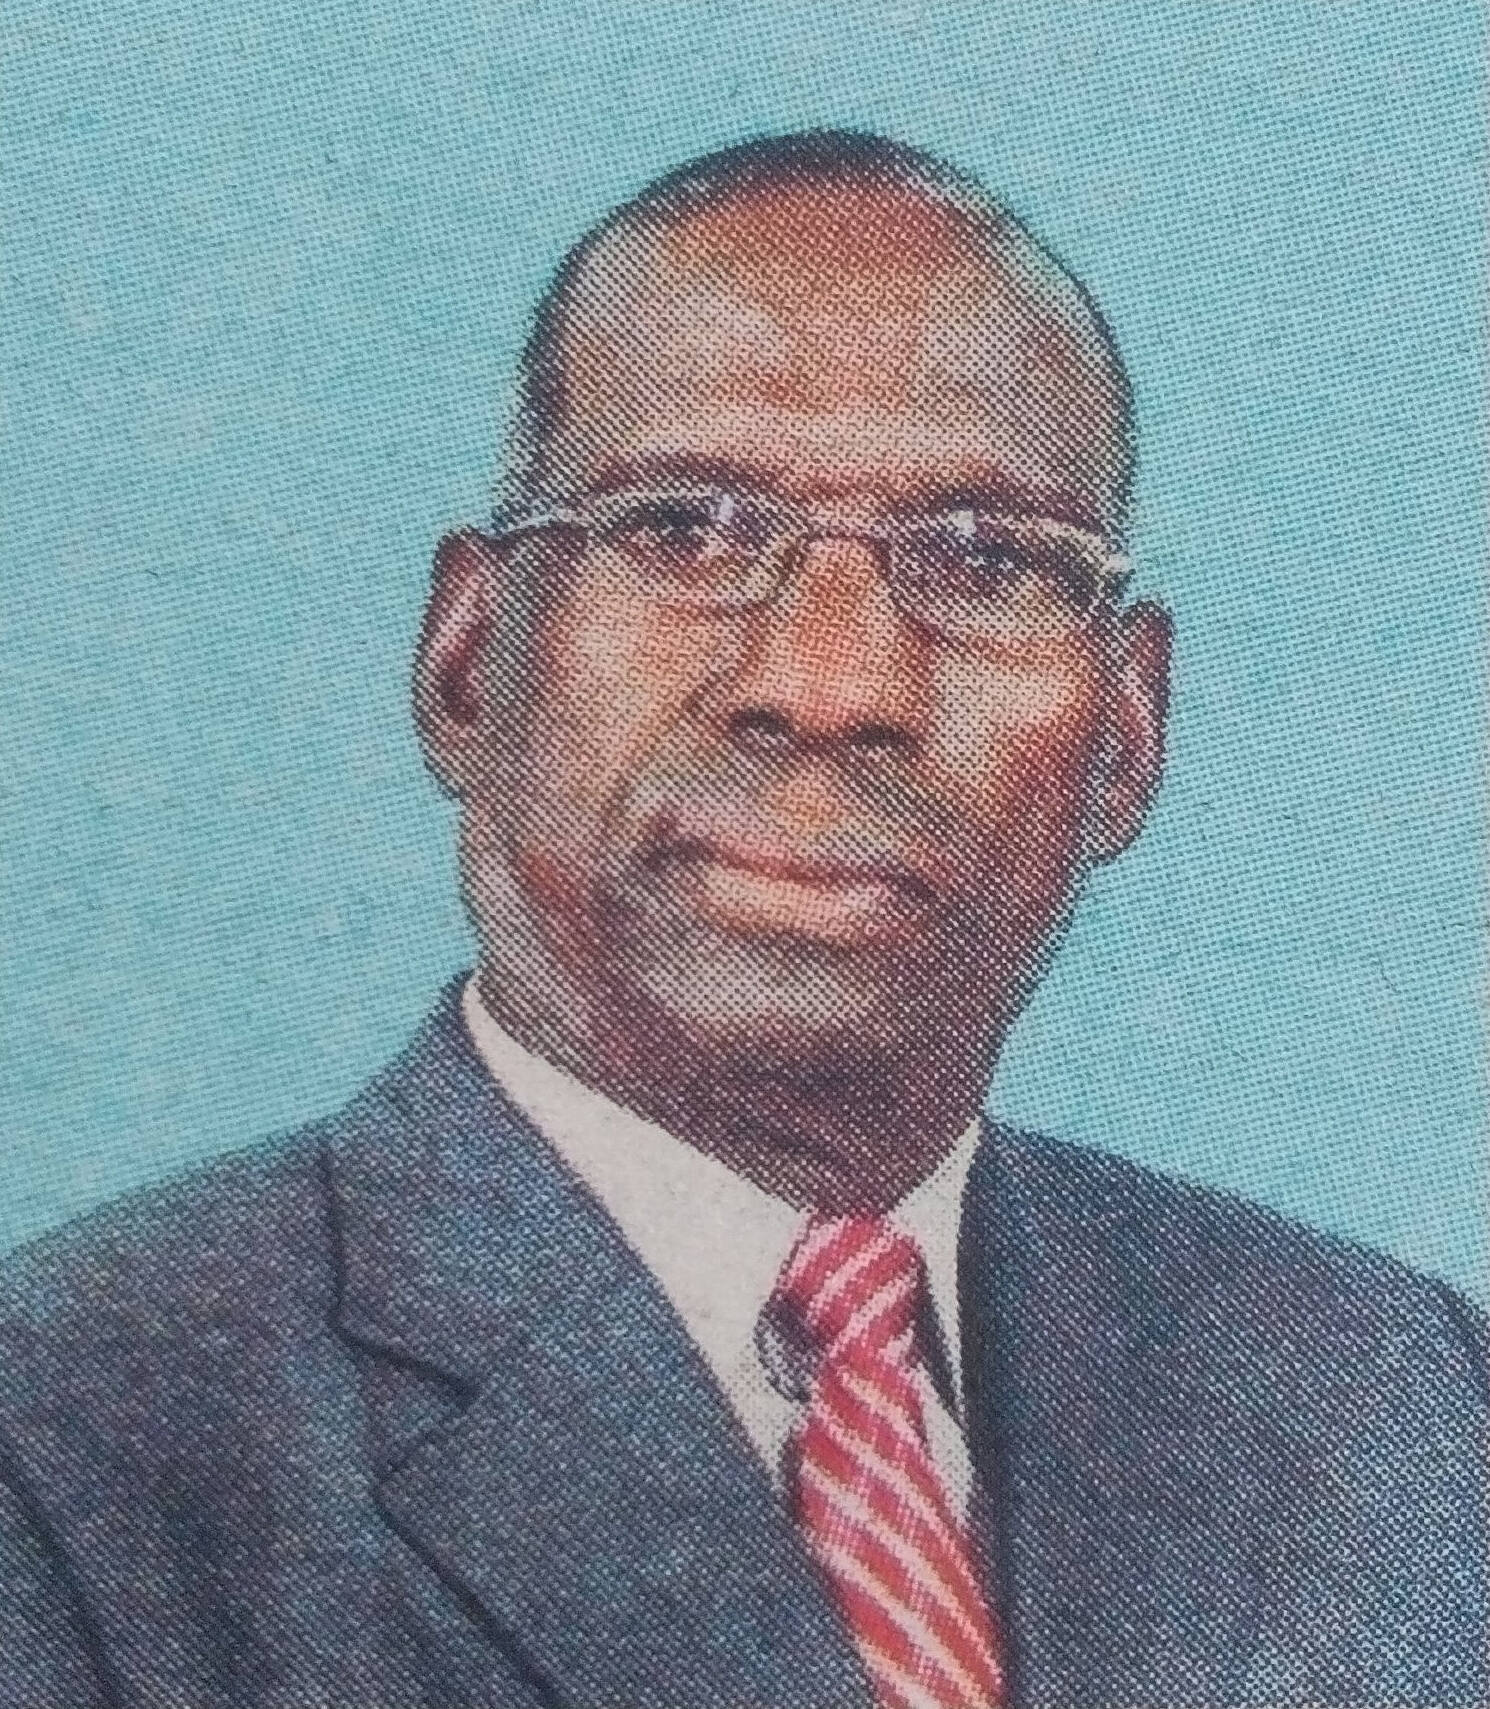 Obituary Image of Joseph Gathagu Kagika